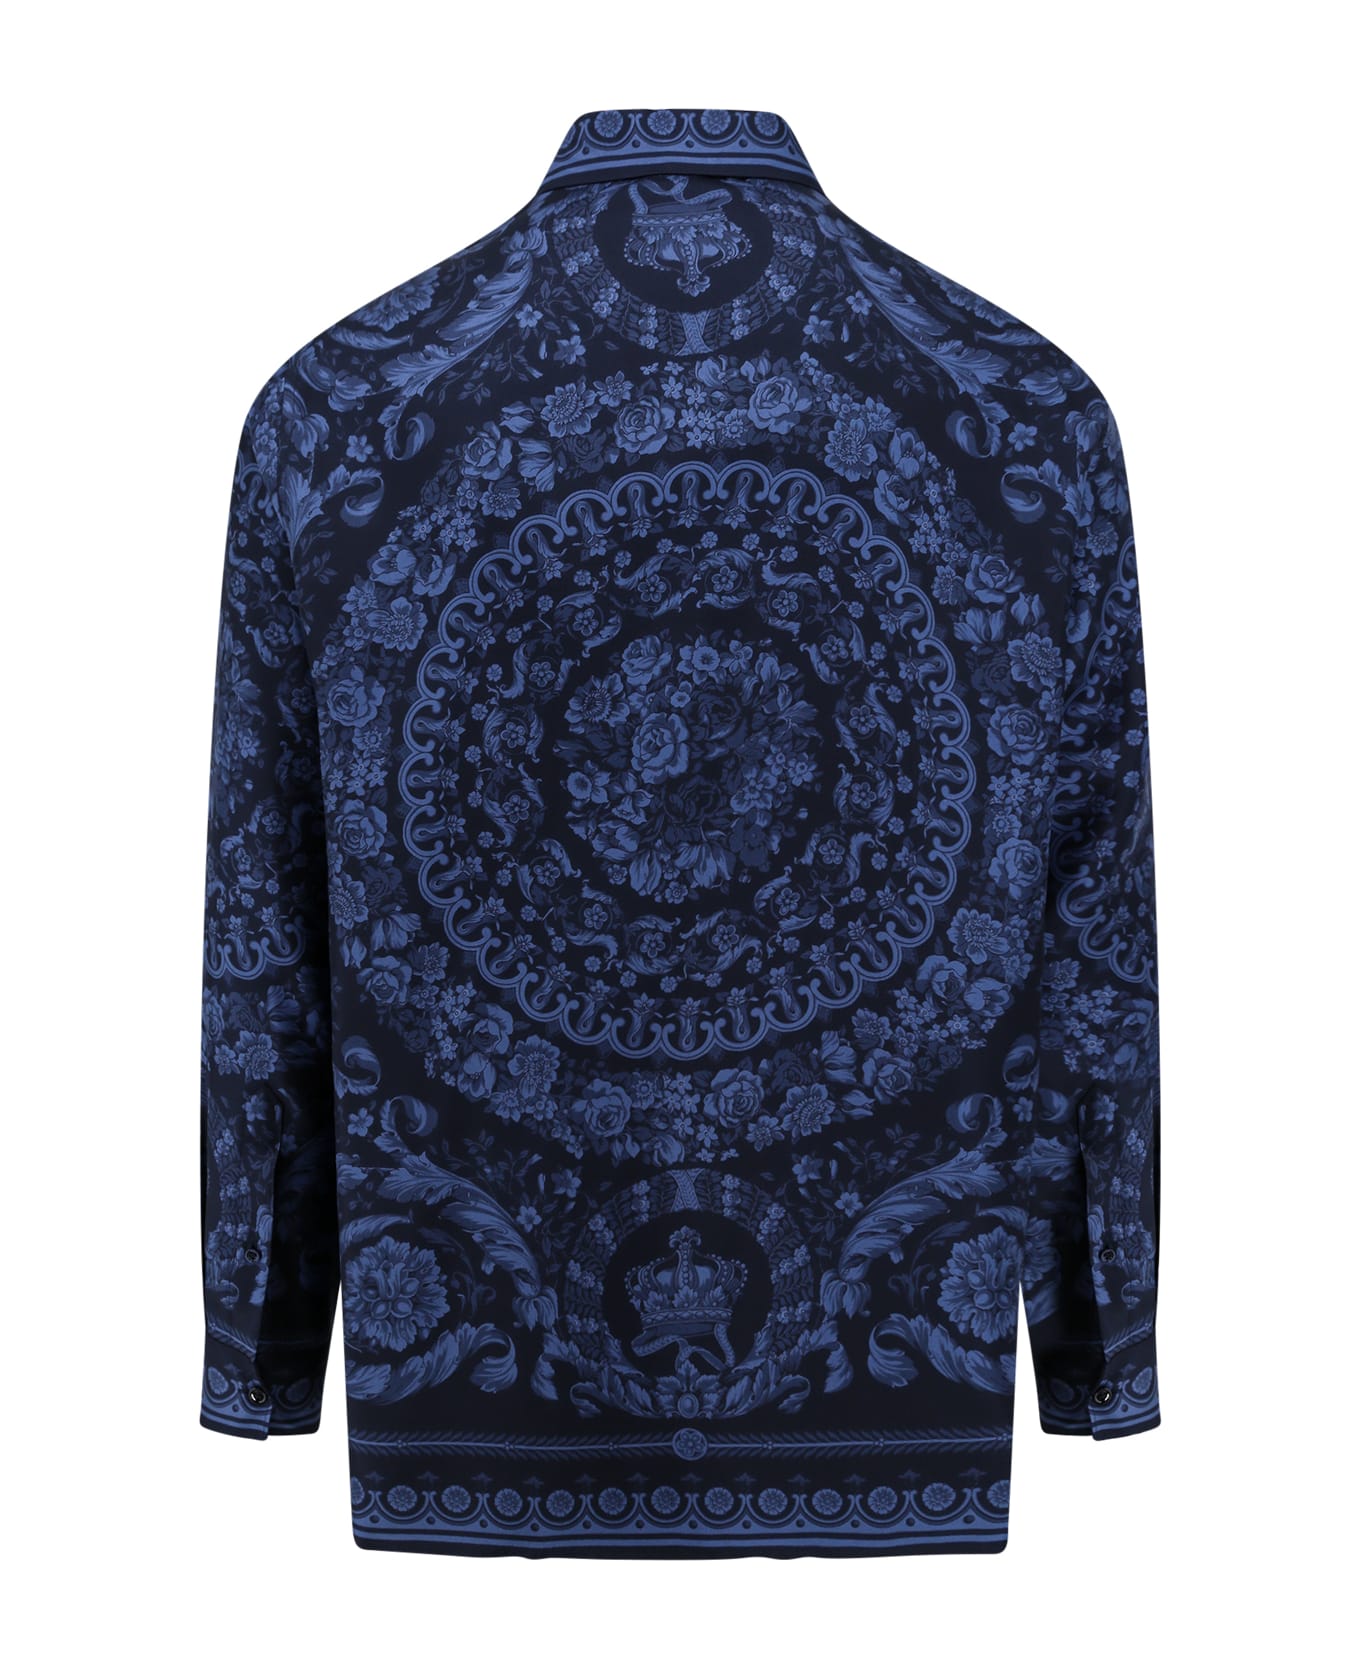 Versace Shirt - Navy Blue シャツ